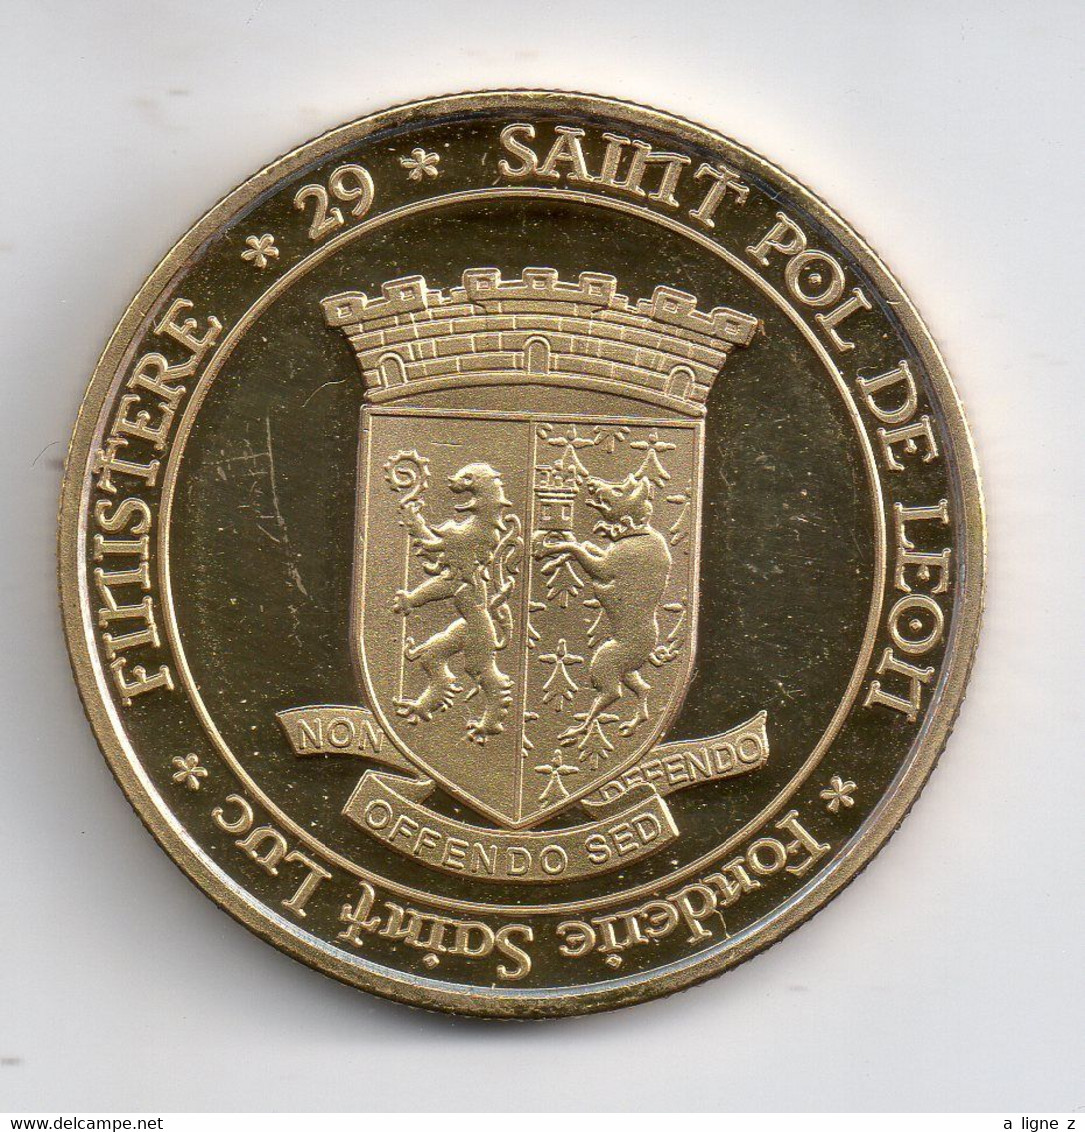 REF MON2  : Médaille Jeton Touristique Fonderie Saint Luc Saint Pol De Leon Finistere 29 - 2014